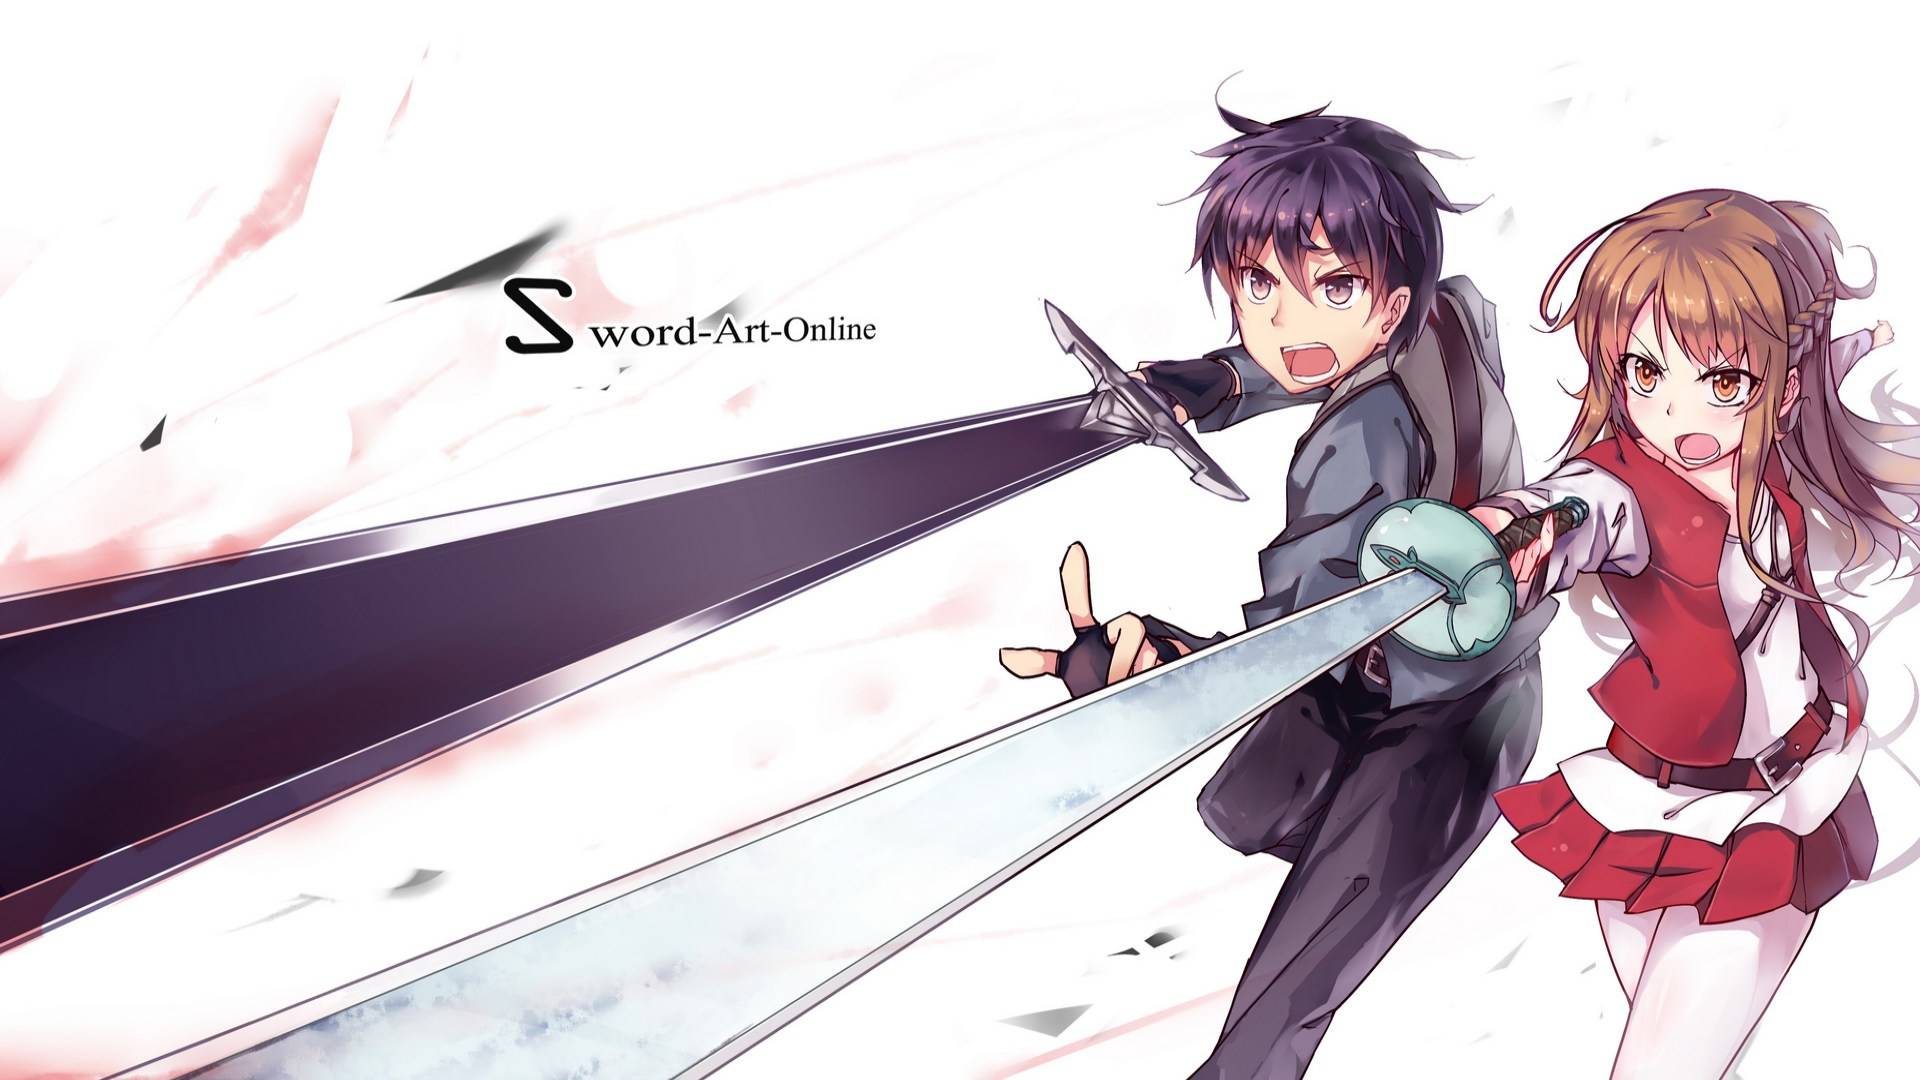 Sword Online Art Asuna Image Kirito Wallpaper